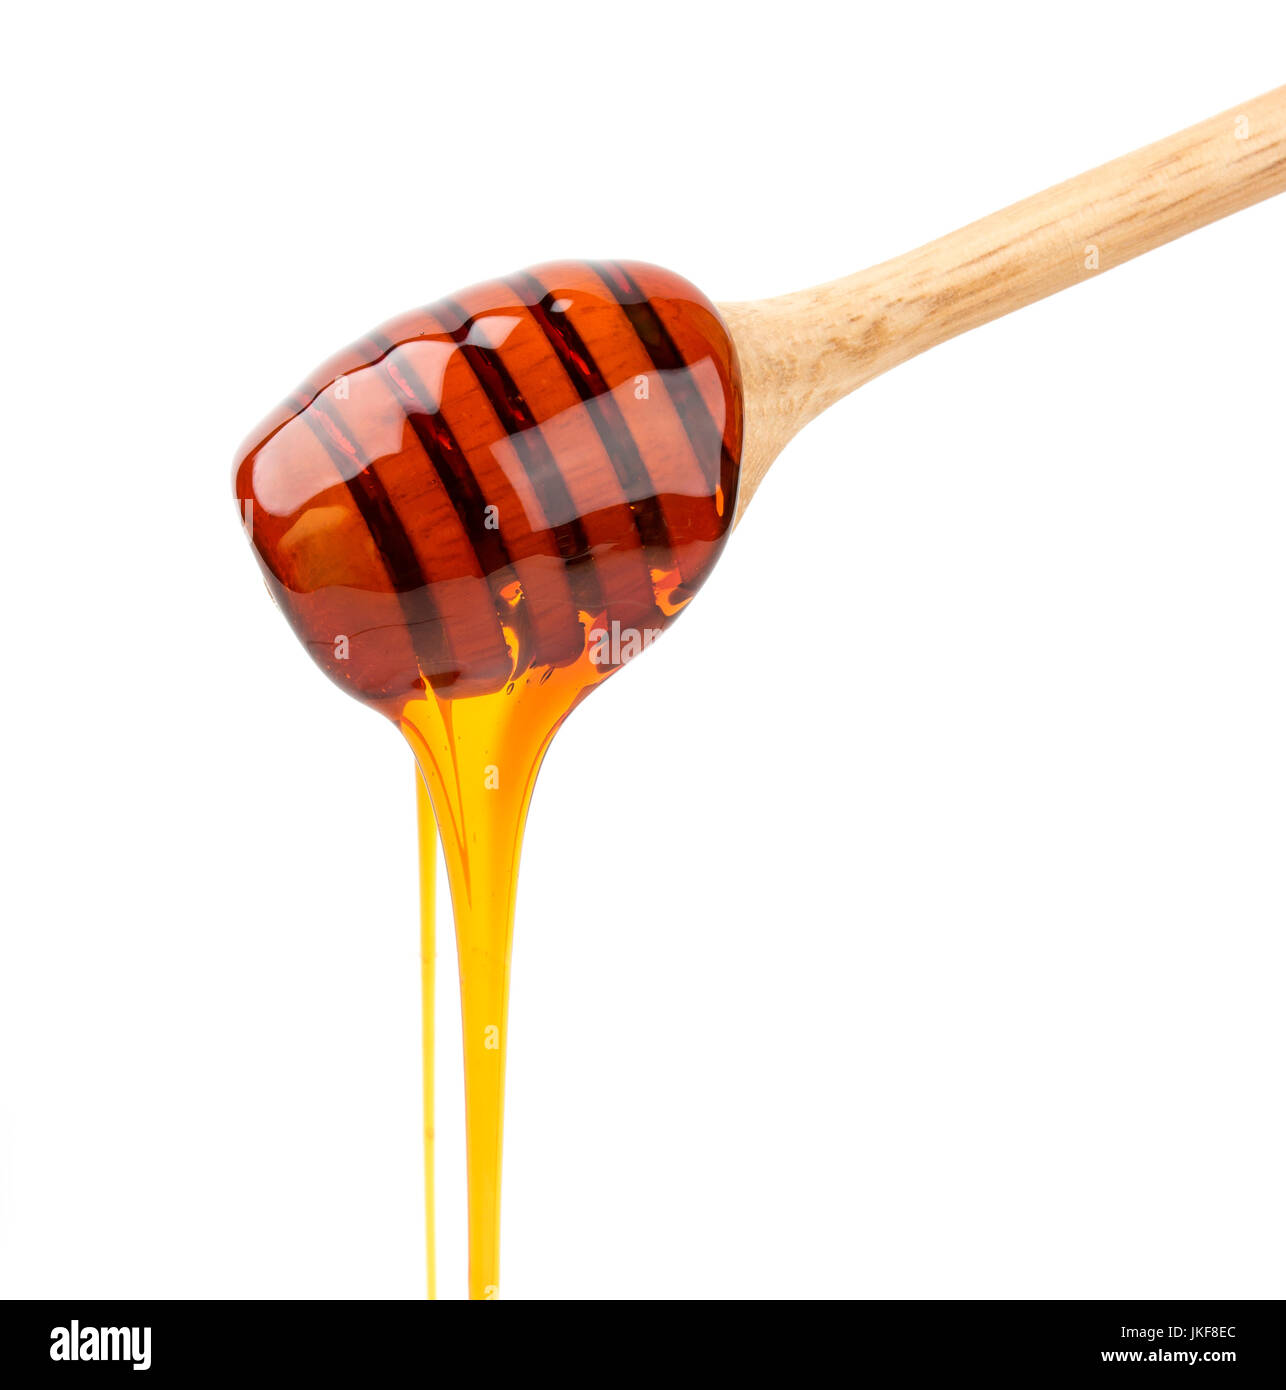 Honey stick isolated on white Stock Photo